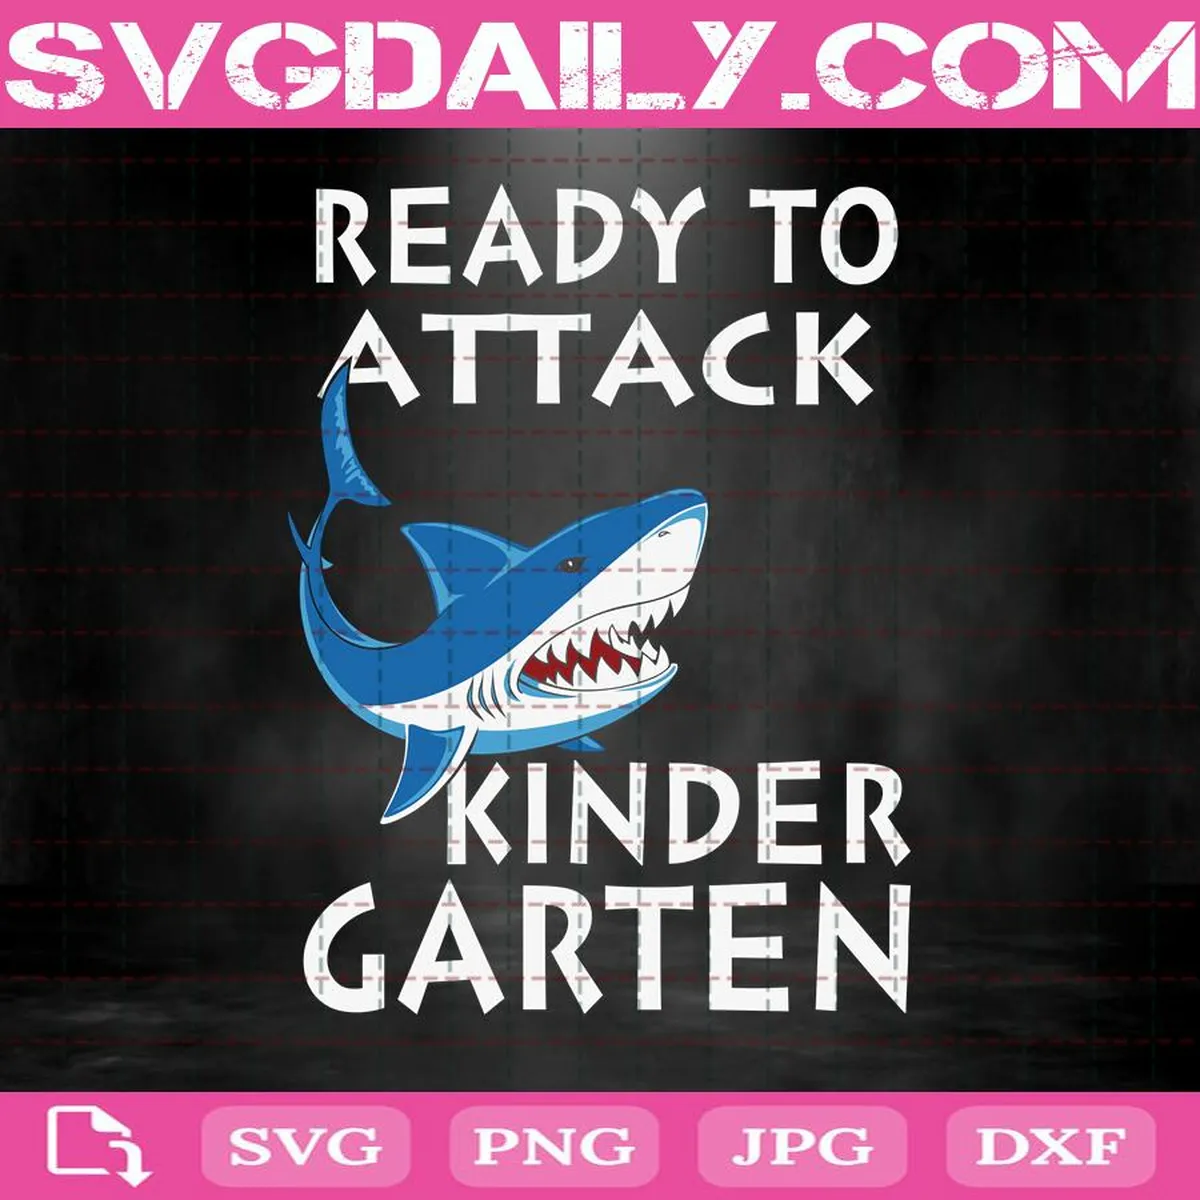 Shark Attack Svg, Shark Ready To Attack Svg, Ready To Attack Kinder Garten Svg, Kinder Garten Svg, Back To School Svg, School Svg